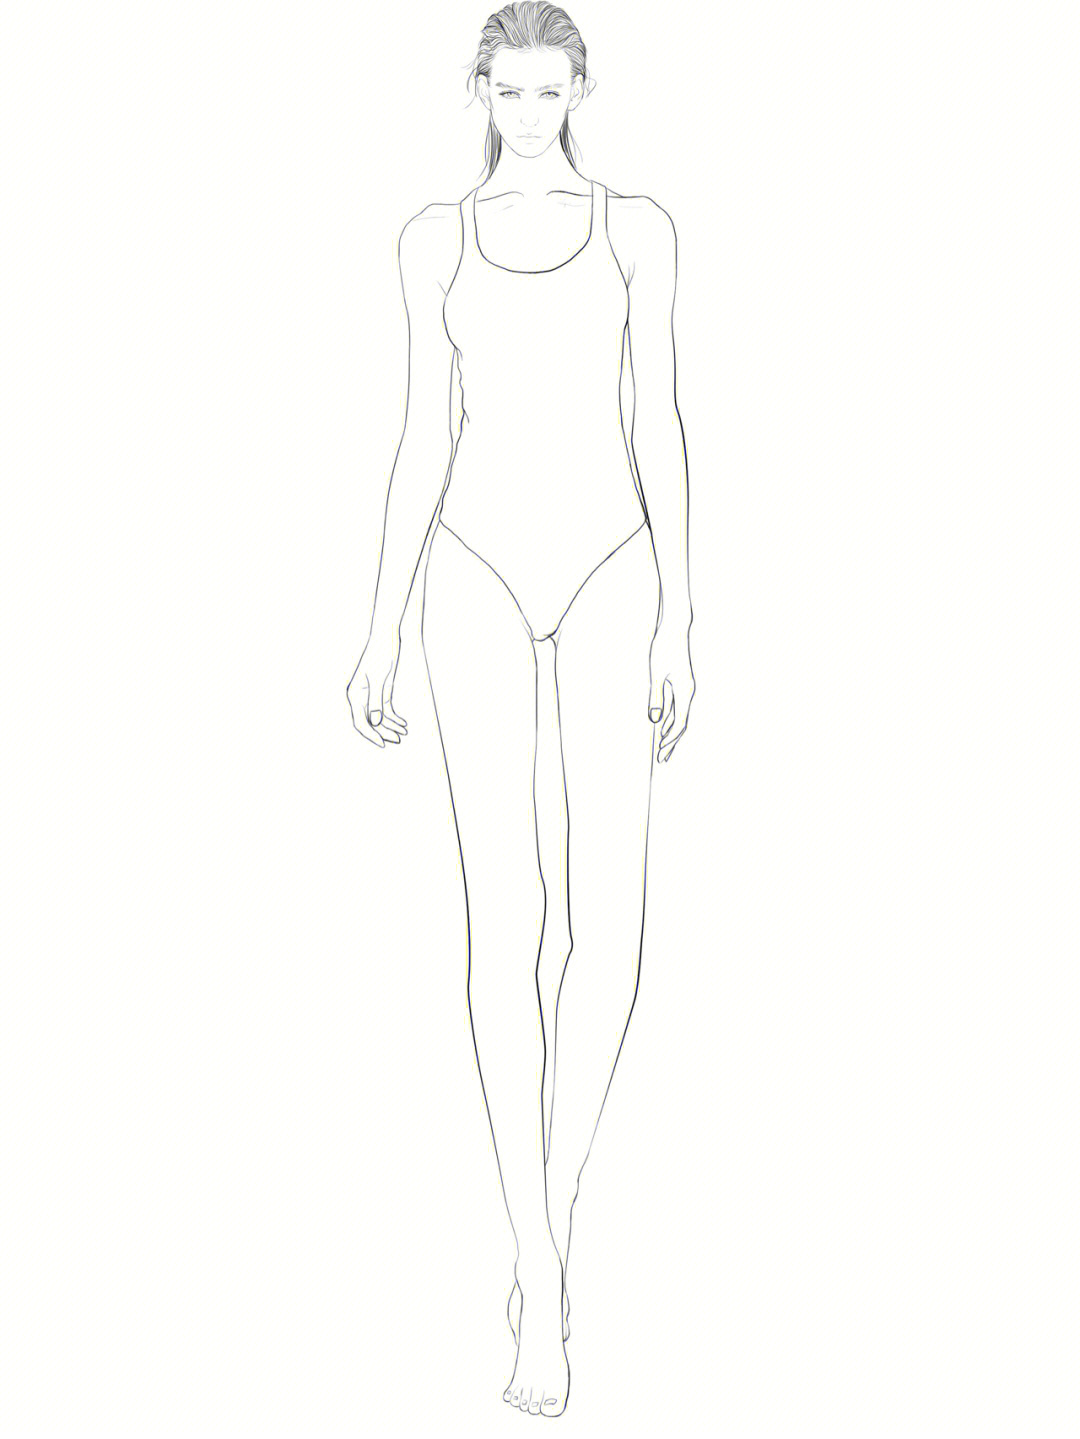 服装设计人体模特线稿